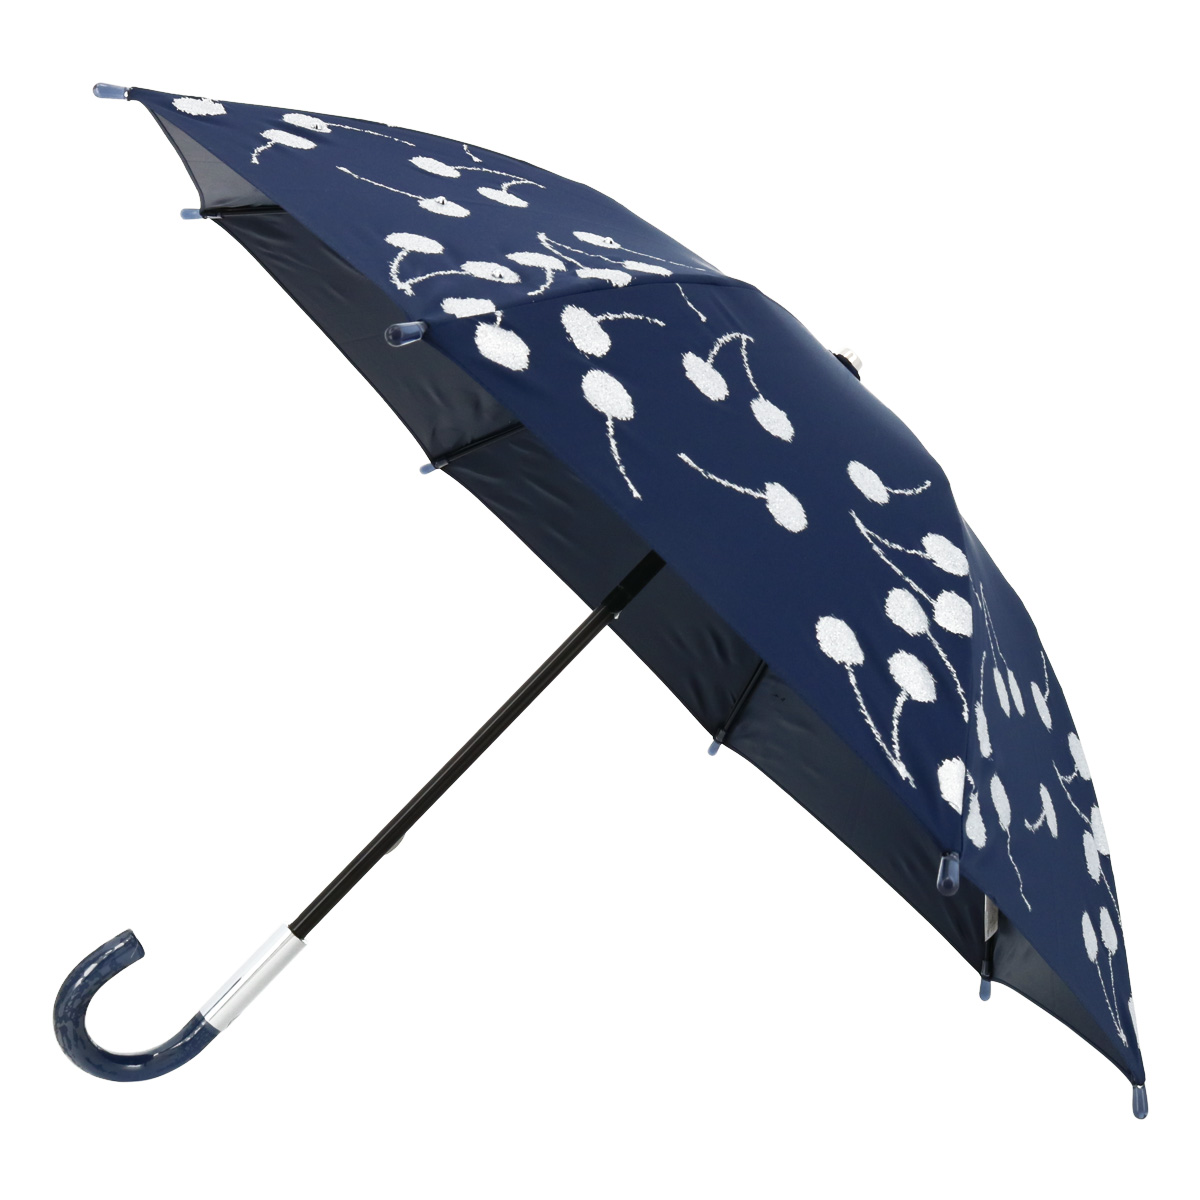 ジルスチュアート 傘 Sサイズ ショート 晴雨兼用傘 1JI 21144-44 JILLSTUART ギフト プレゼント 日傘 雨傘 UVカット 遮光  遮熱